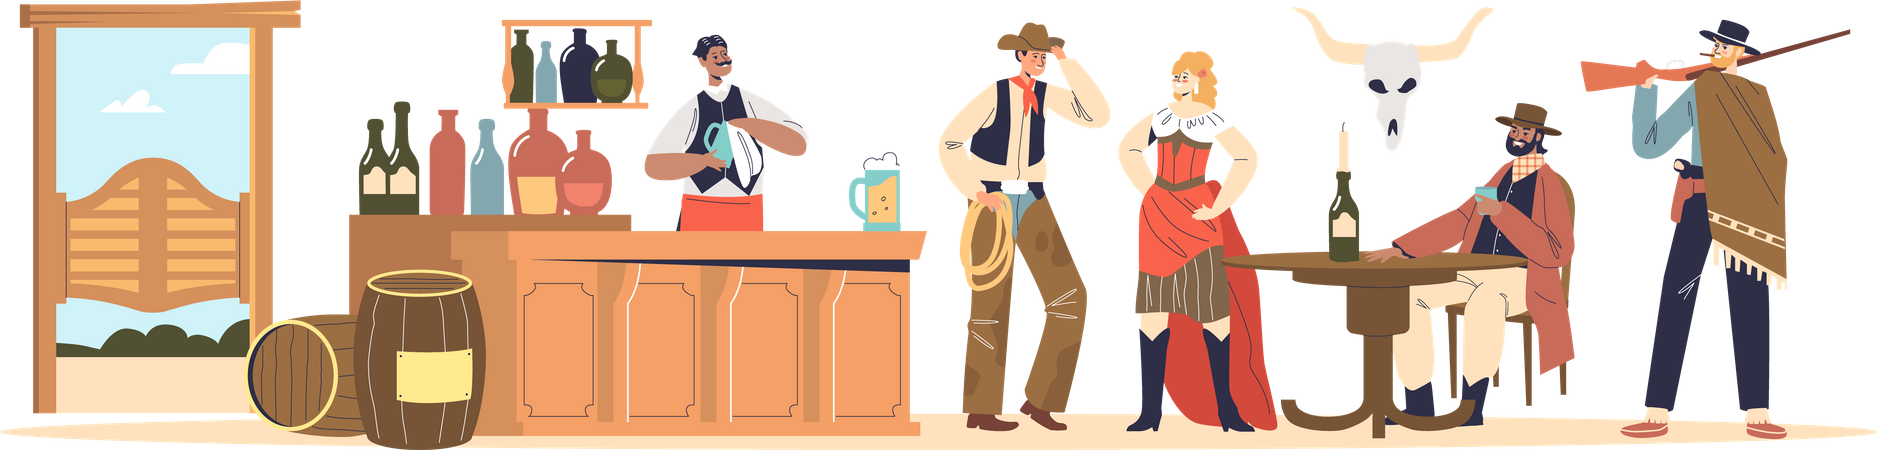 Cowboys em roupas ocidentais bebendo em pub retrô  Ilustração